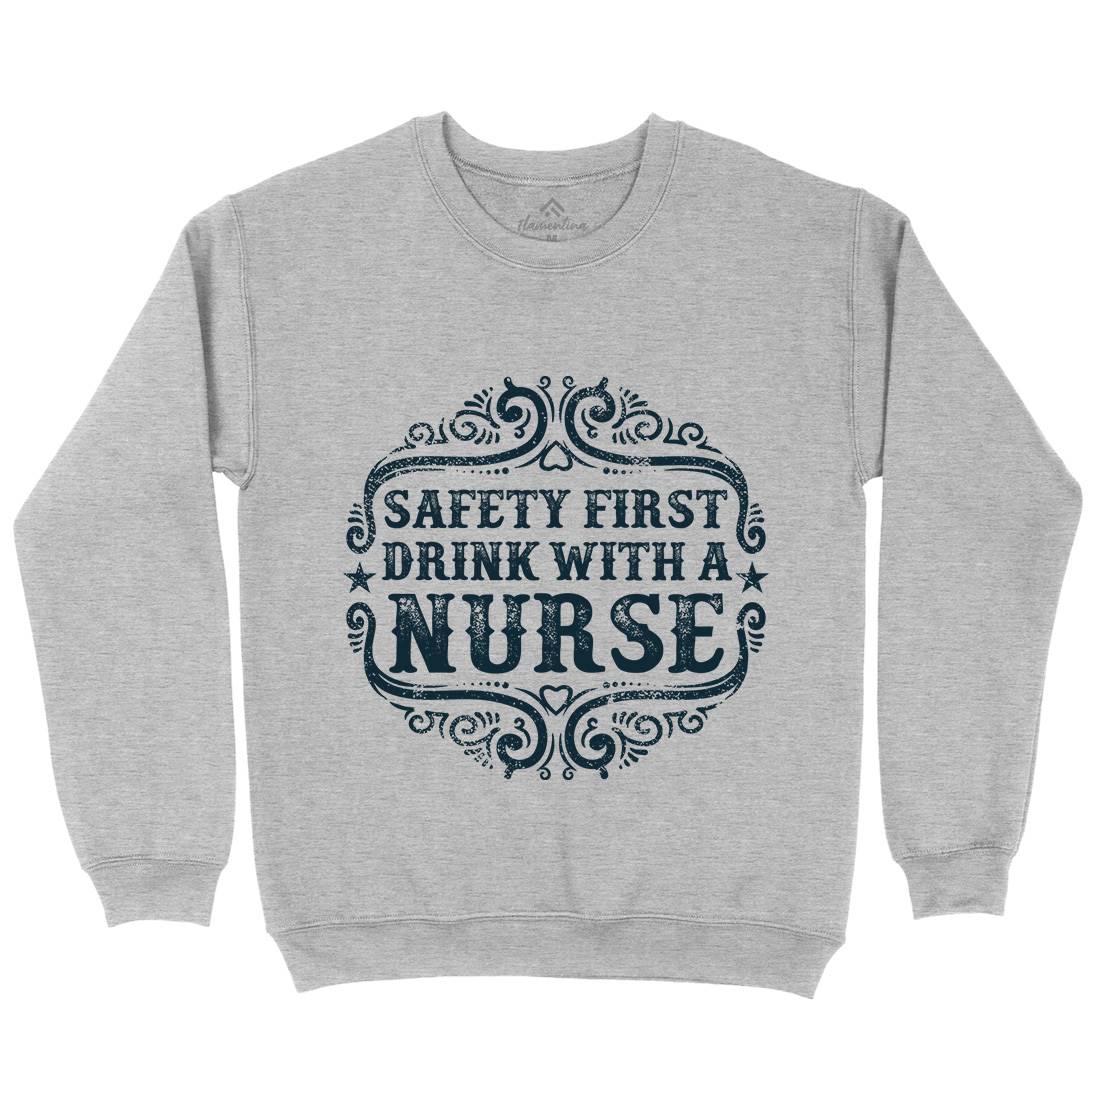 Drink With A Nurse Kids Crew Neck Sweatshirt Work C926